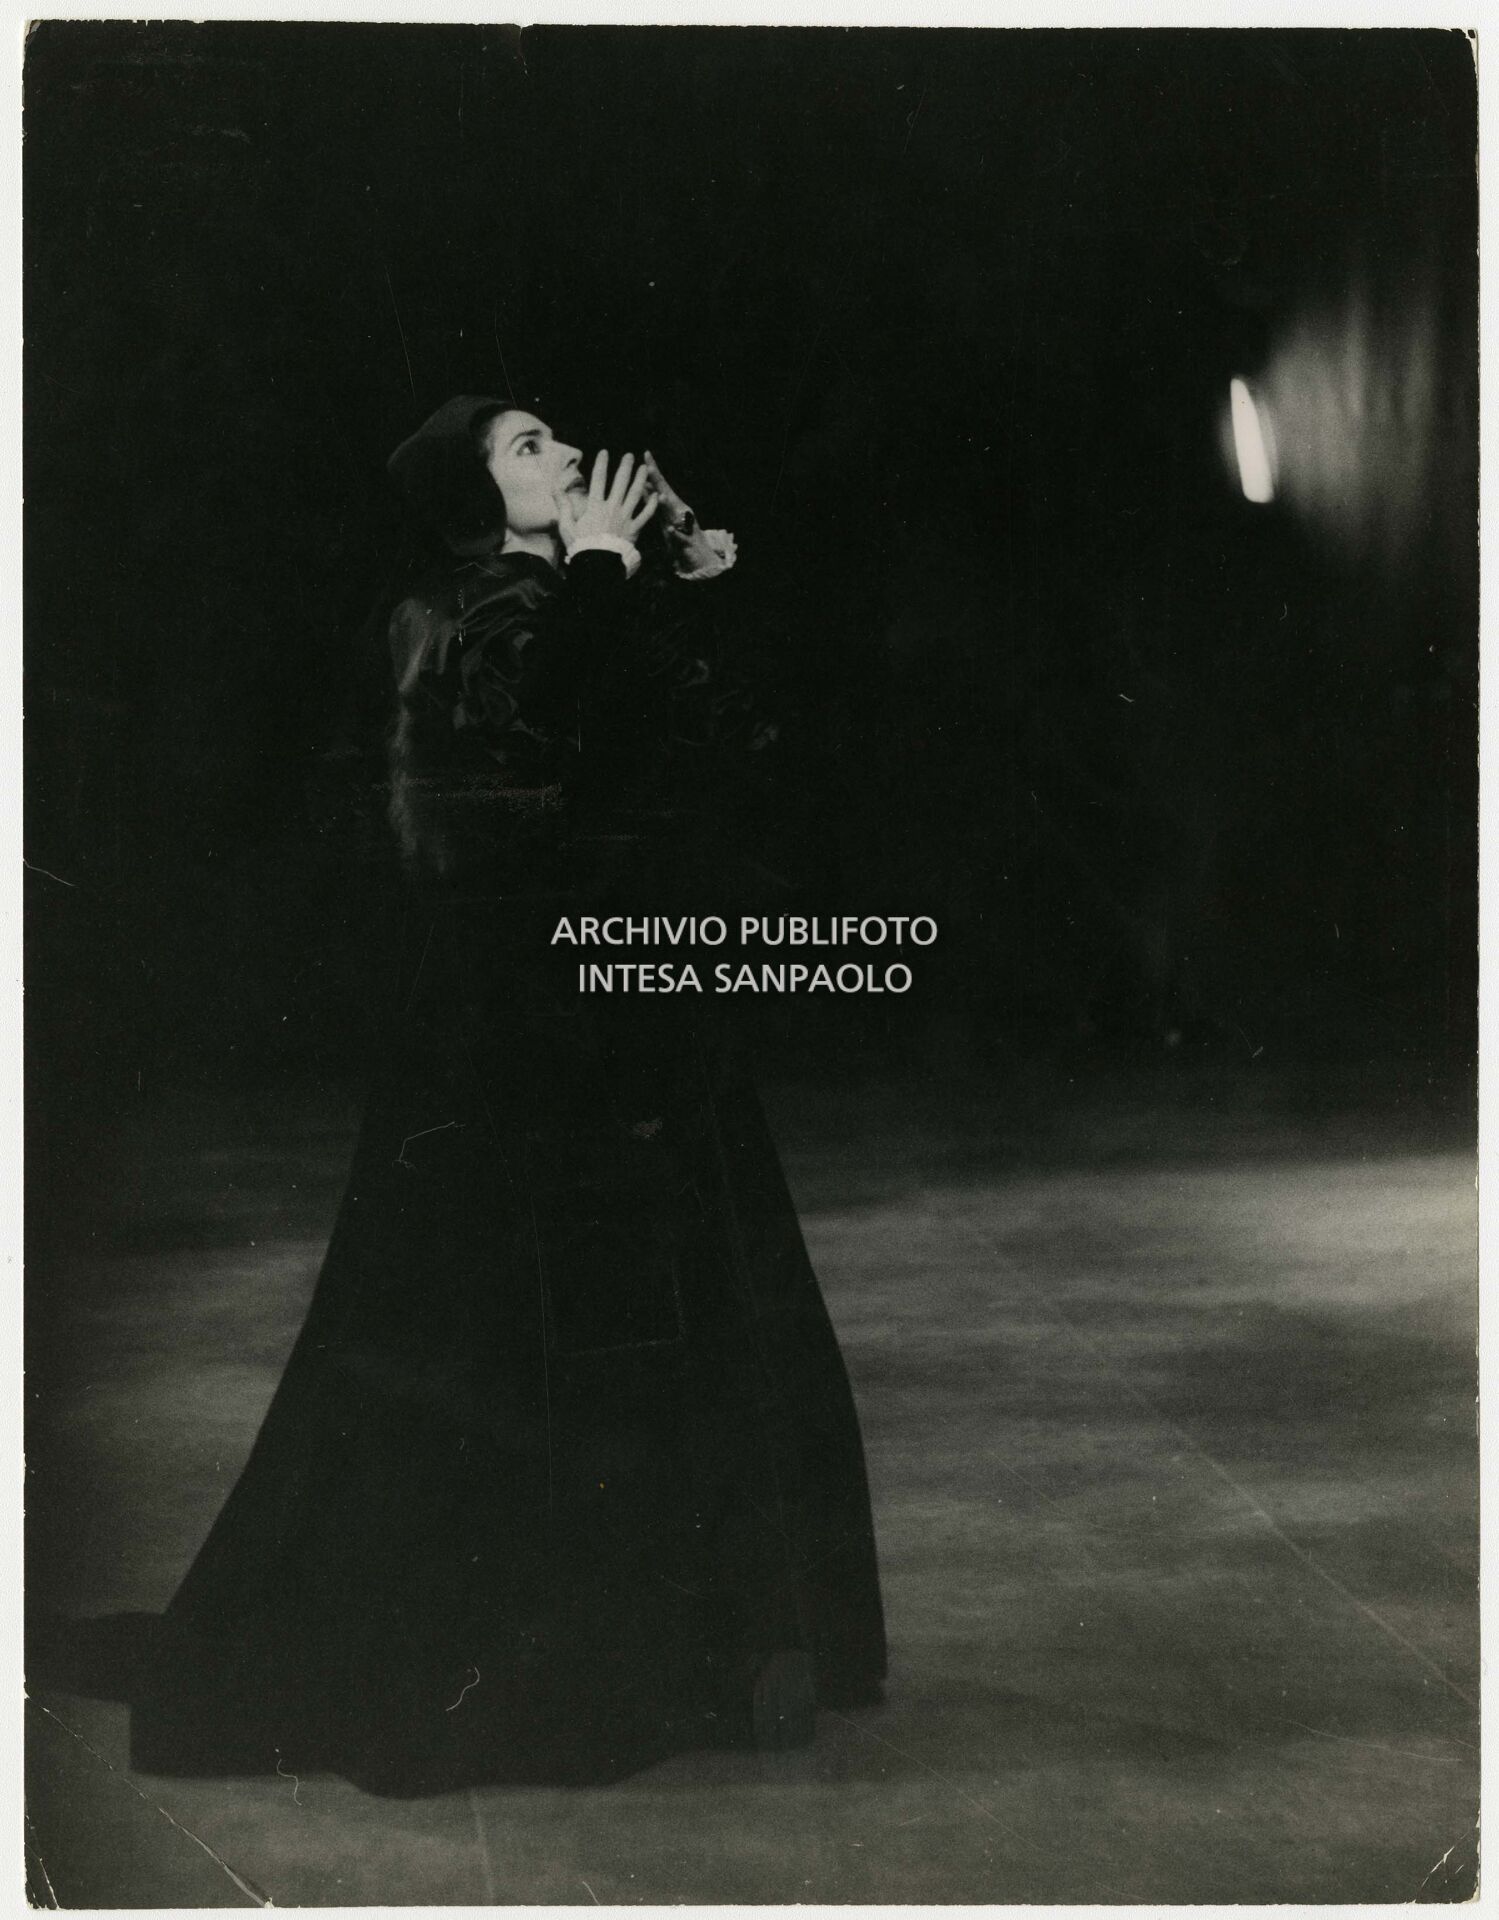 Maria Callas at the rehearsal of Anna Bolena by Gaetano Donizetti at La Scala